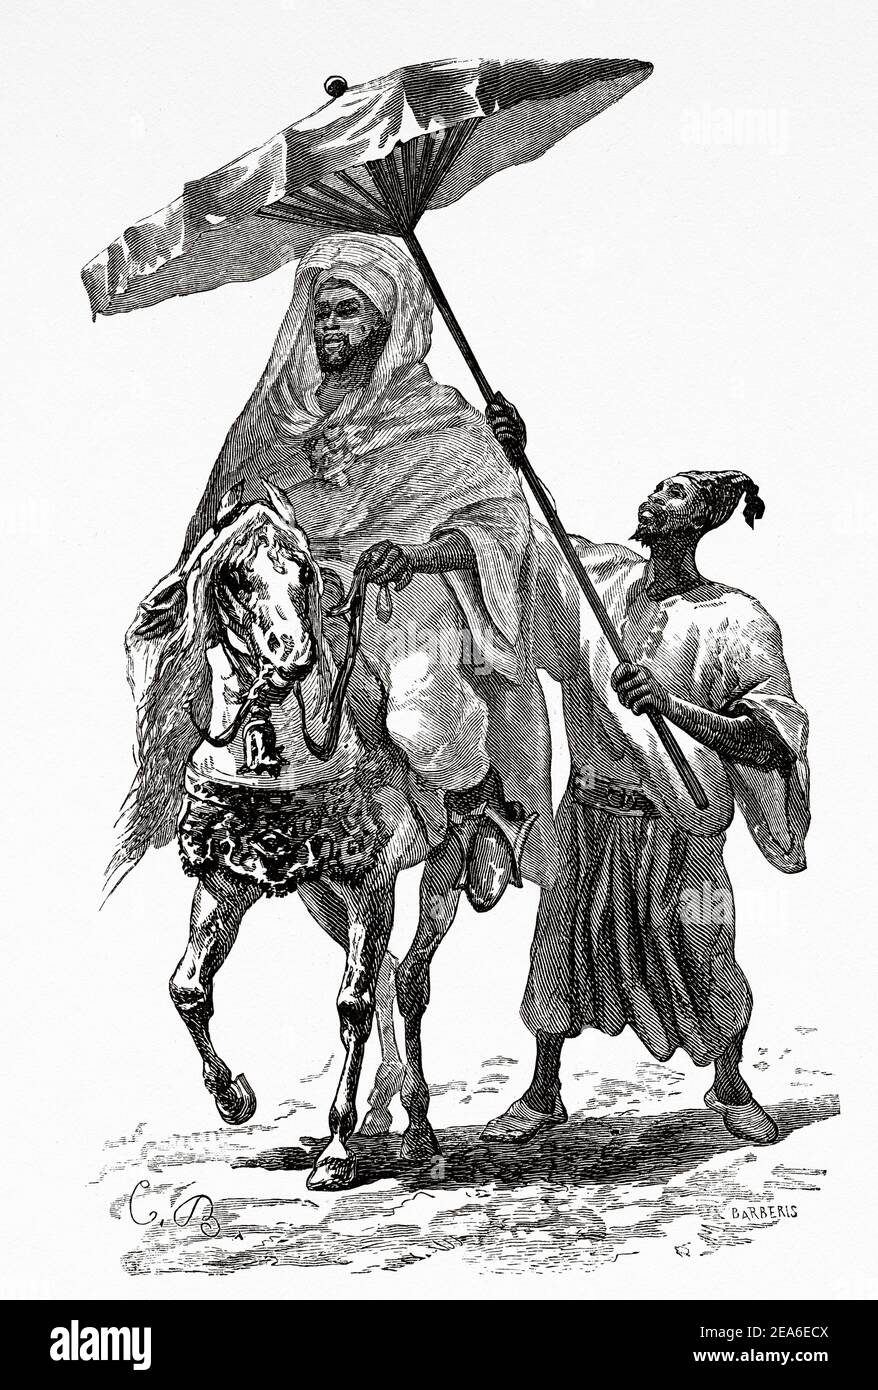 Il Sultano del Marocco cavallo c1890. Hassan i del Marocco (Fez, 1836 - Tadla 1894) Sultano del Marocco dal 1873 al 1894, Africa del Nord. Antica illustrazione del 19 ° secolo inciso da El Mundo Ilustrado 1879 Foto Stock